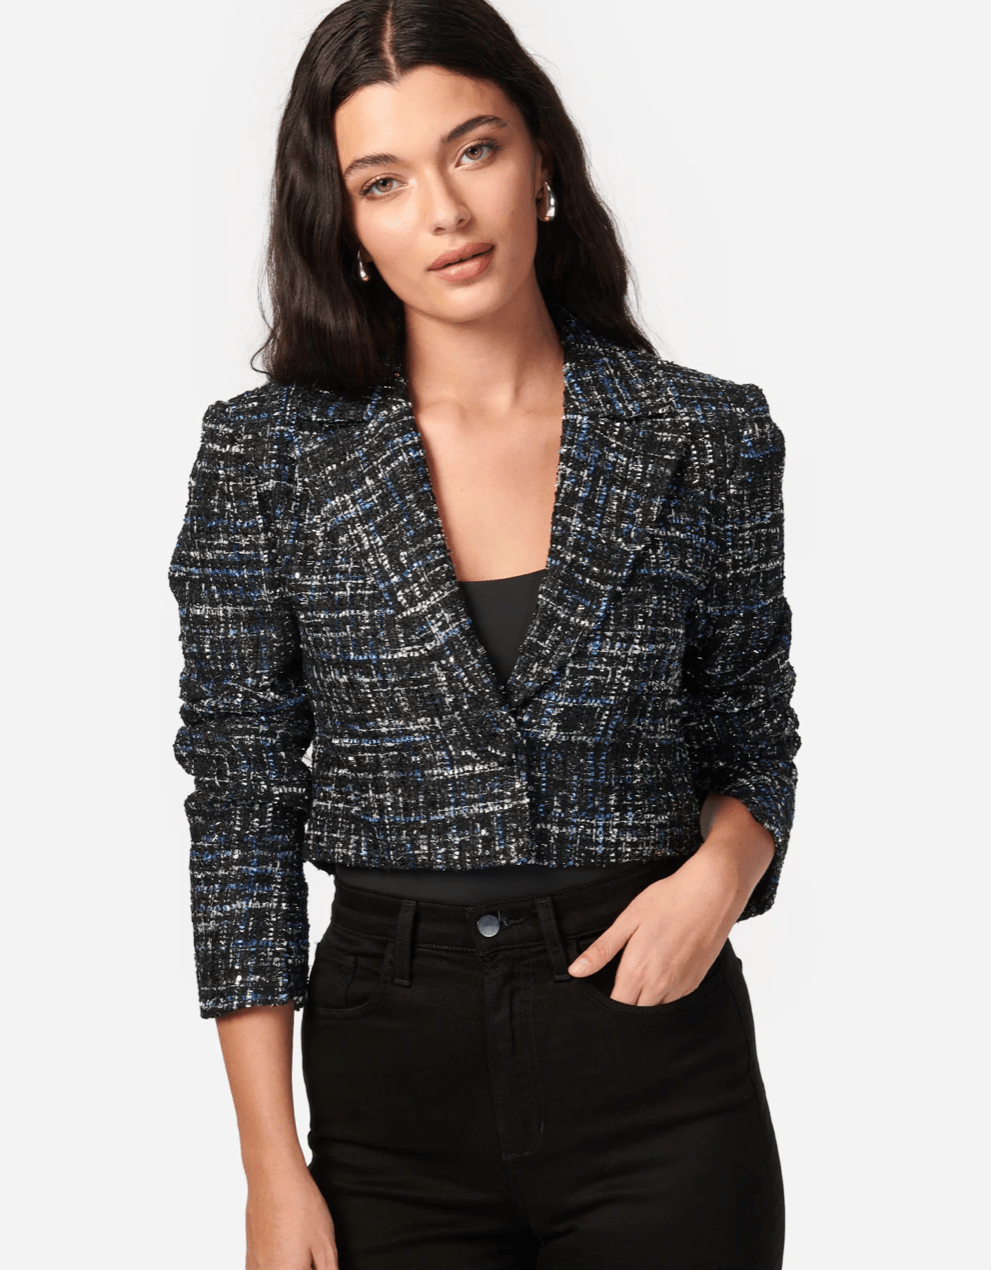 Cami NYC Ash Tweed Jacket in Navy Tweed - Estilo Boutique